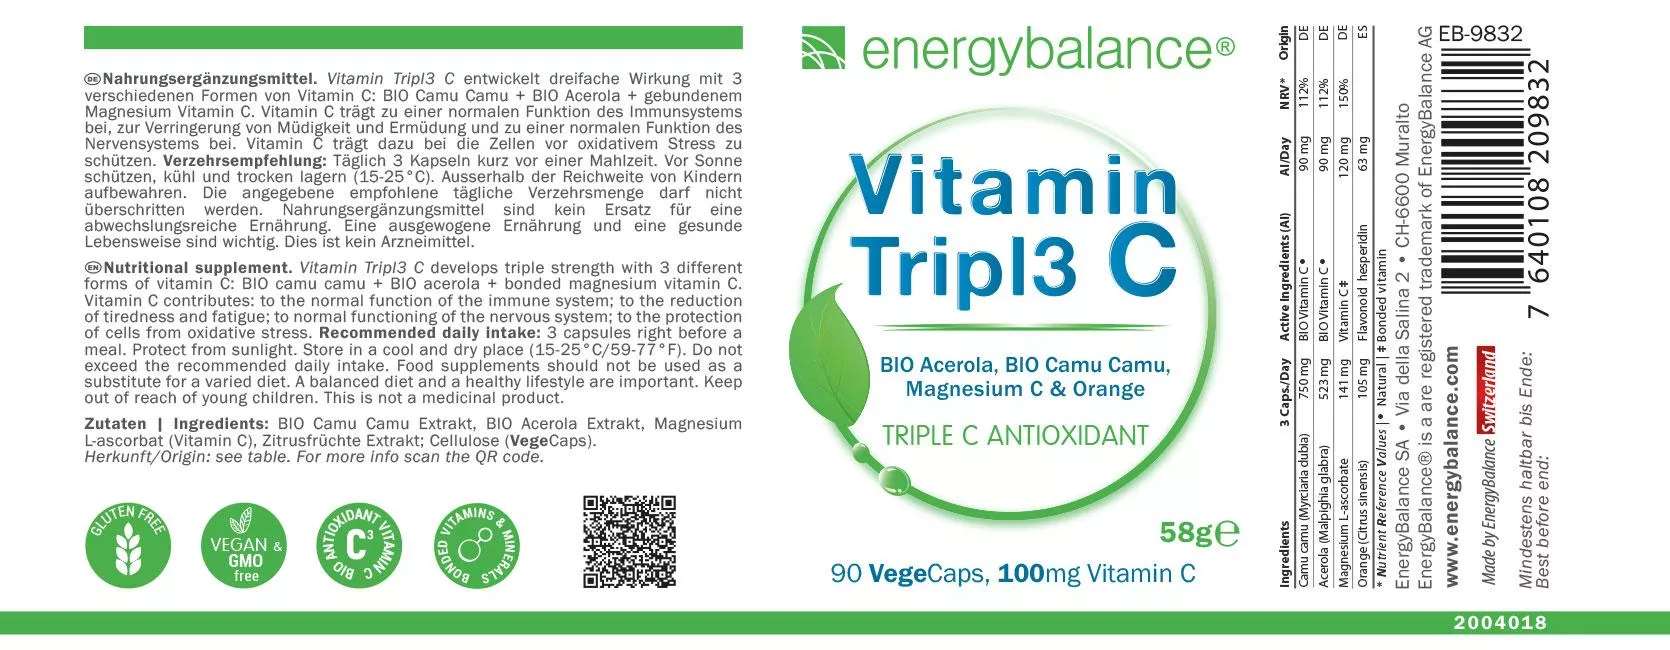 Vitamin Tripl3 C von Etikett von Energybalance